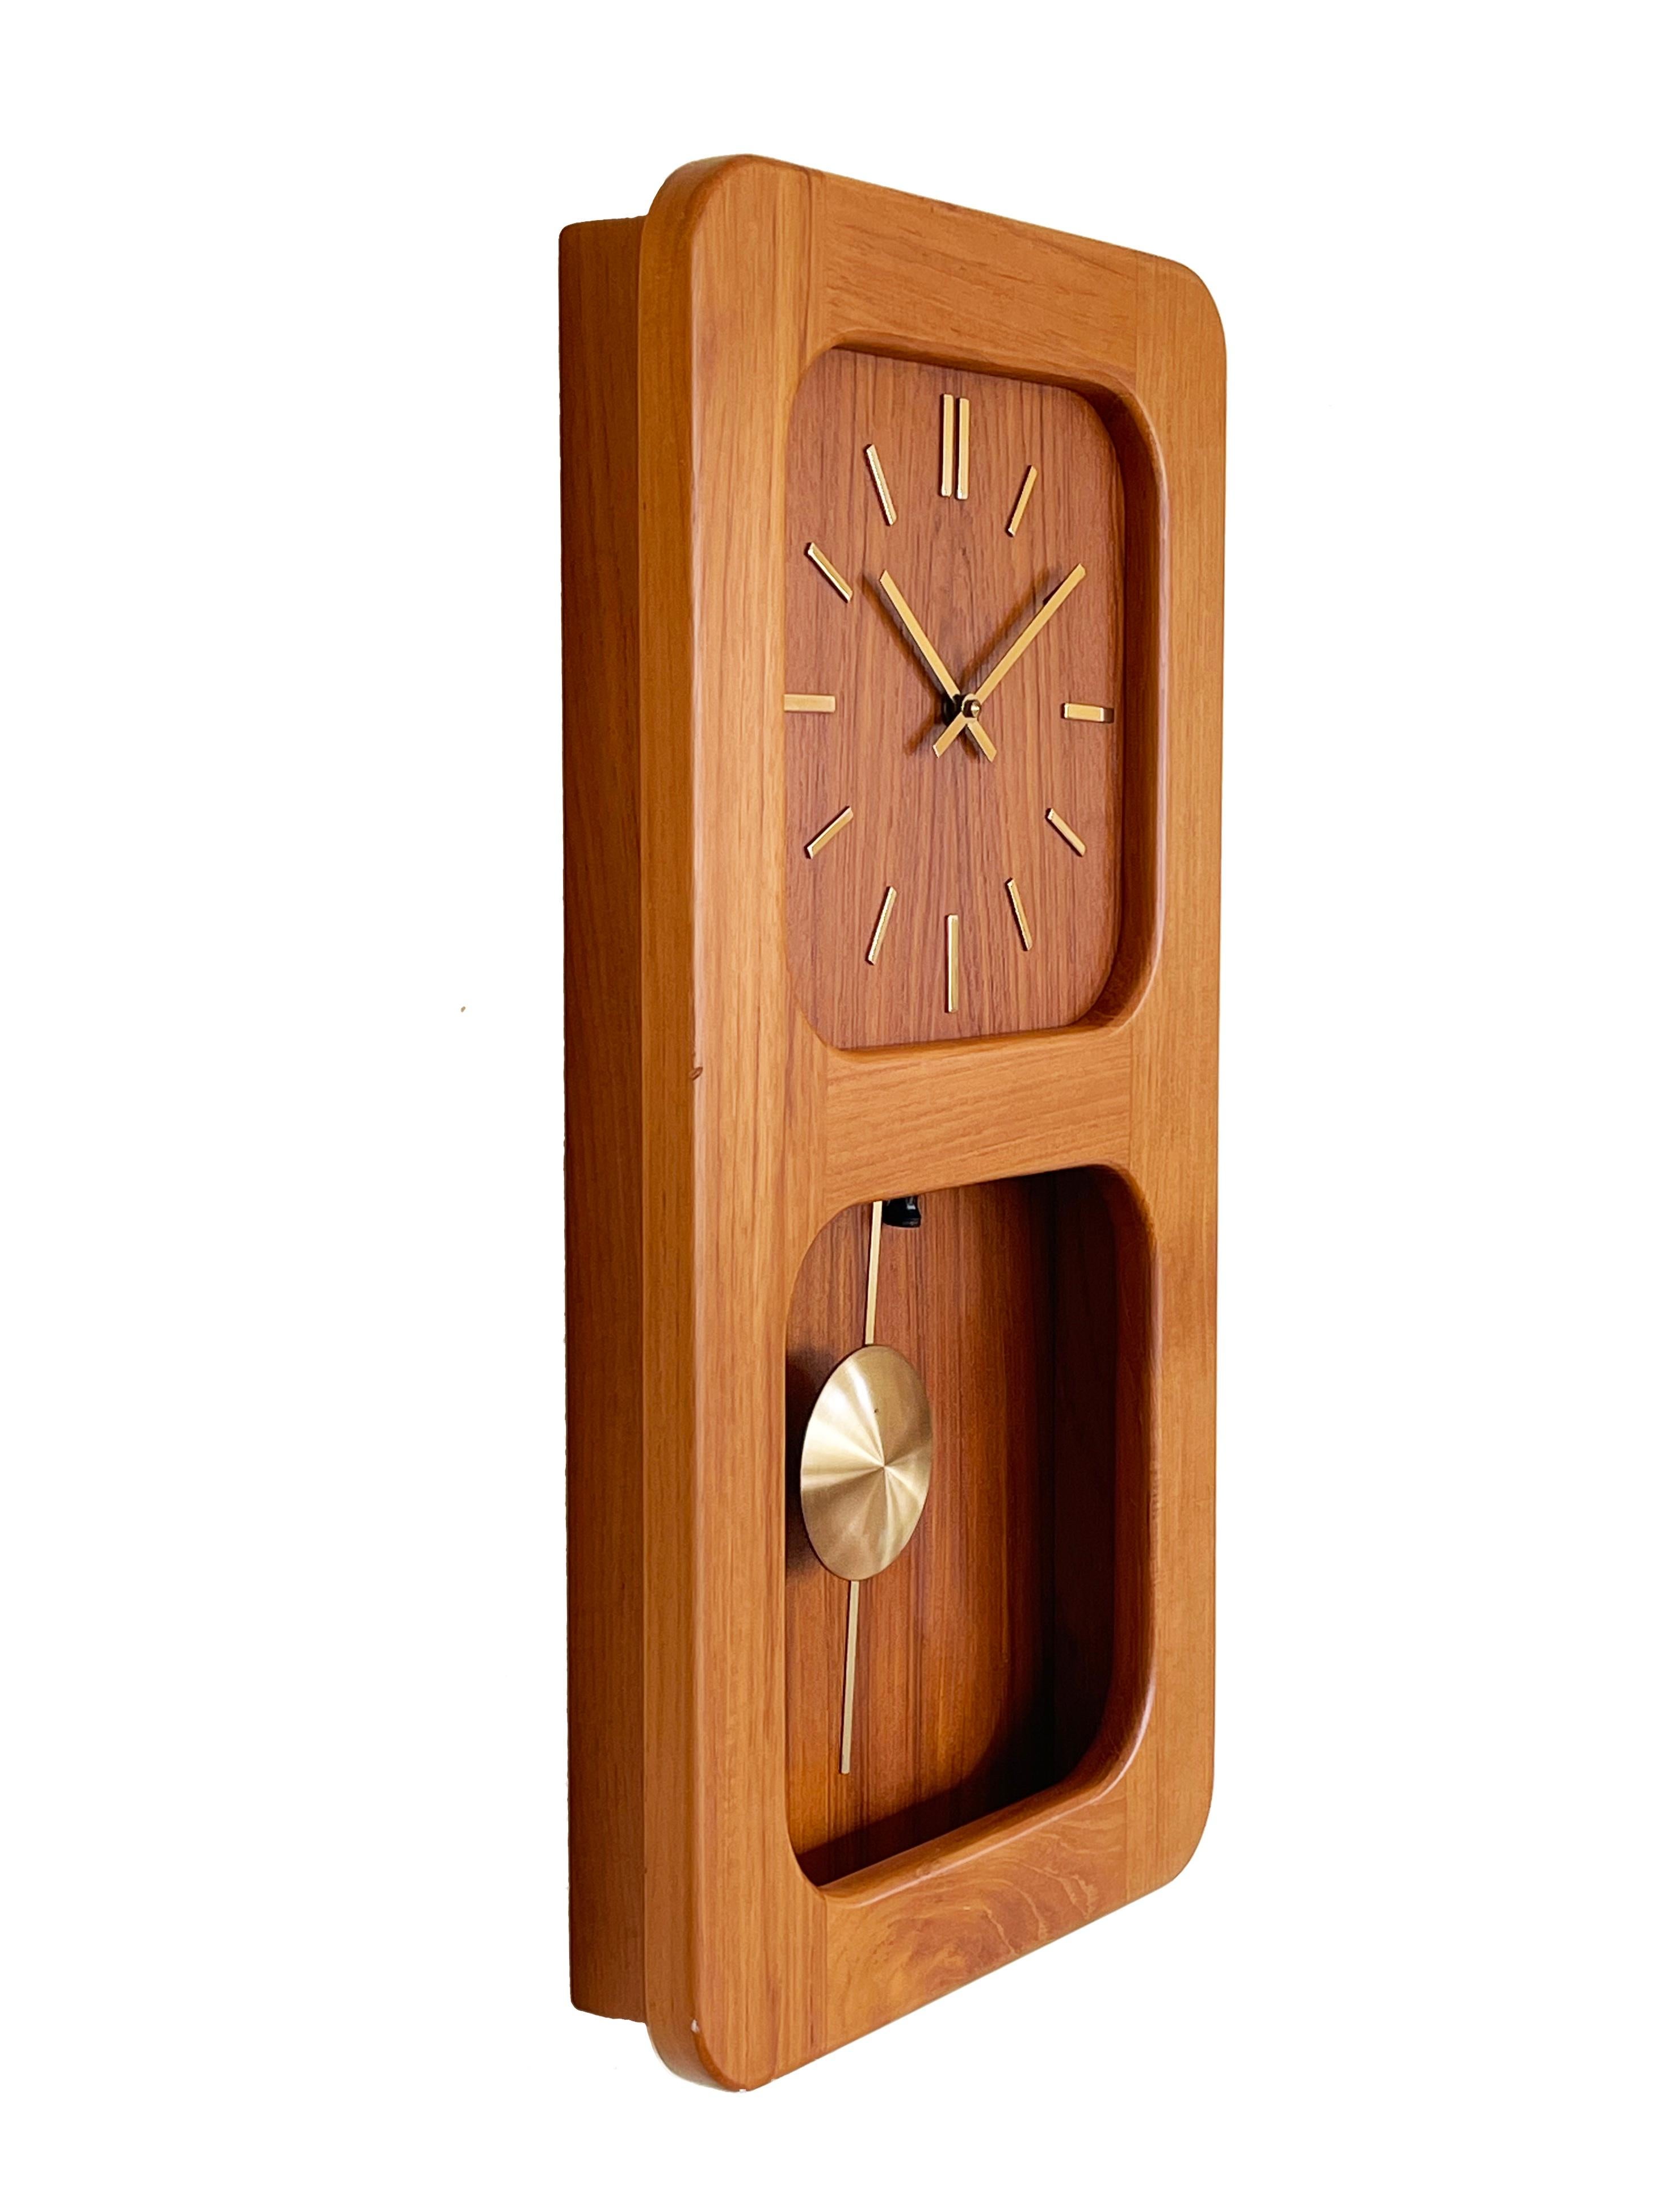 Horloge fantastique du milieu du siècle en teck, avec un pendule en laiton par Westminster Clocks.
Magnifique boîtier nouvellement huilé dans un design minimaliste typiquement danois.
Les horloges de Westminster à Copenhague ont choisi ici le